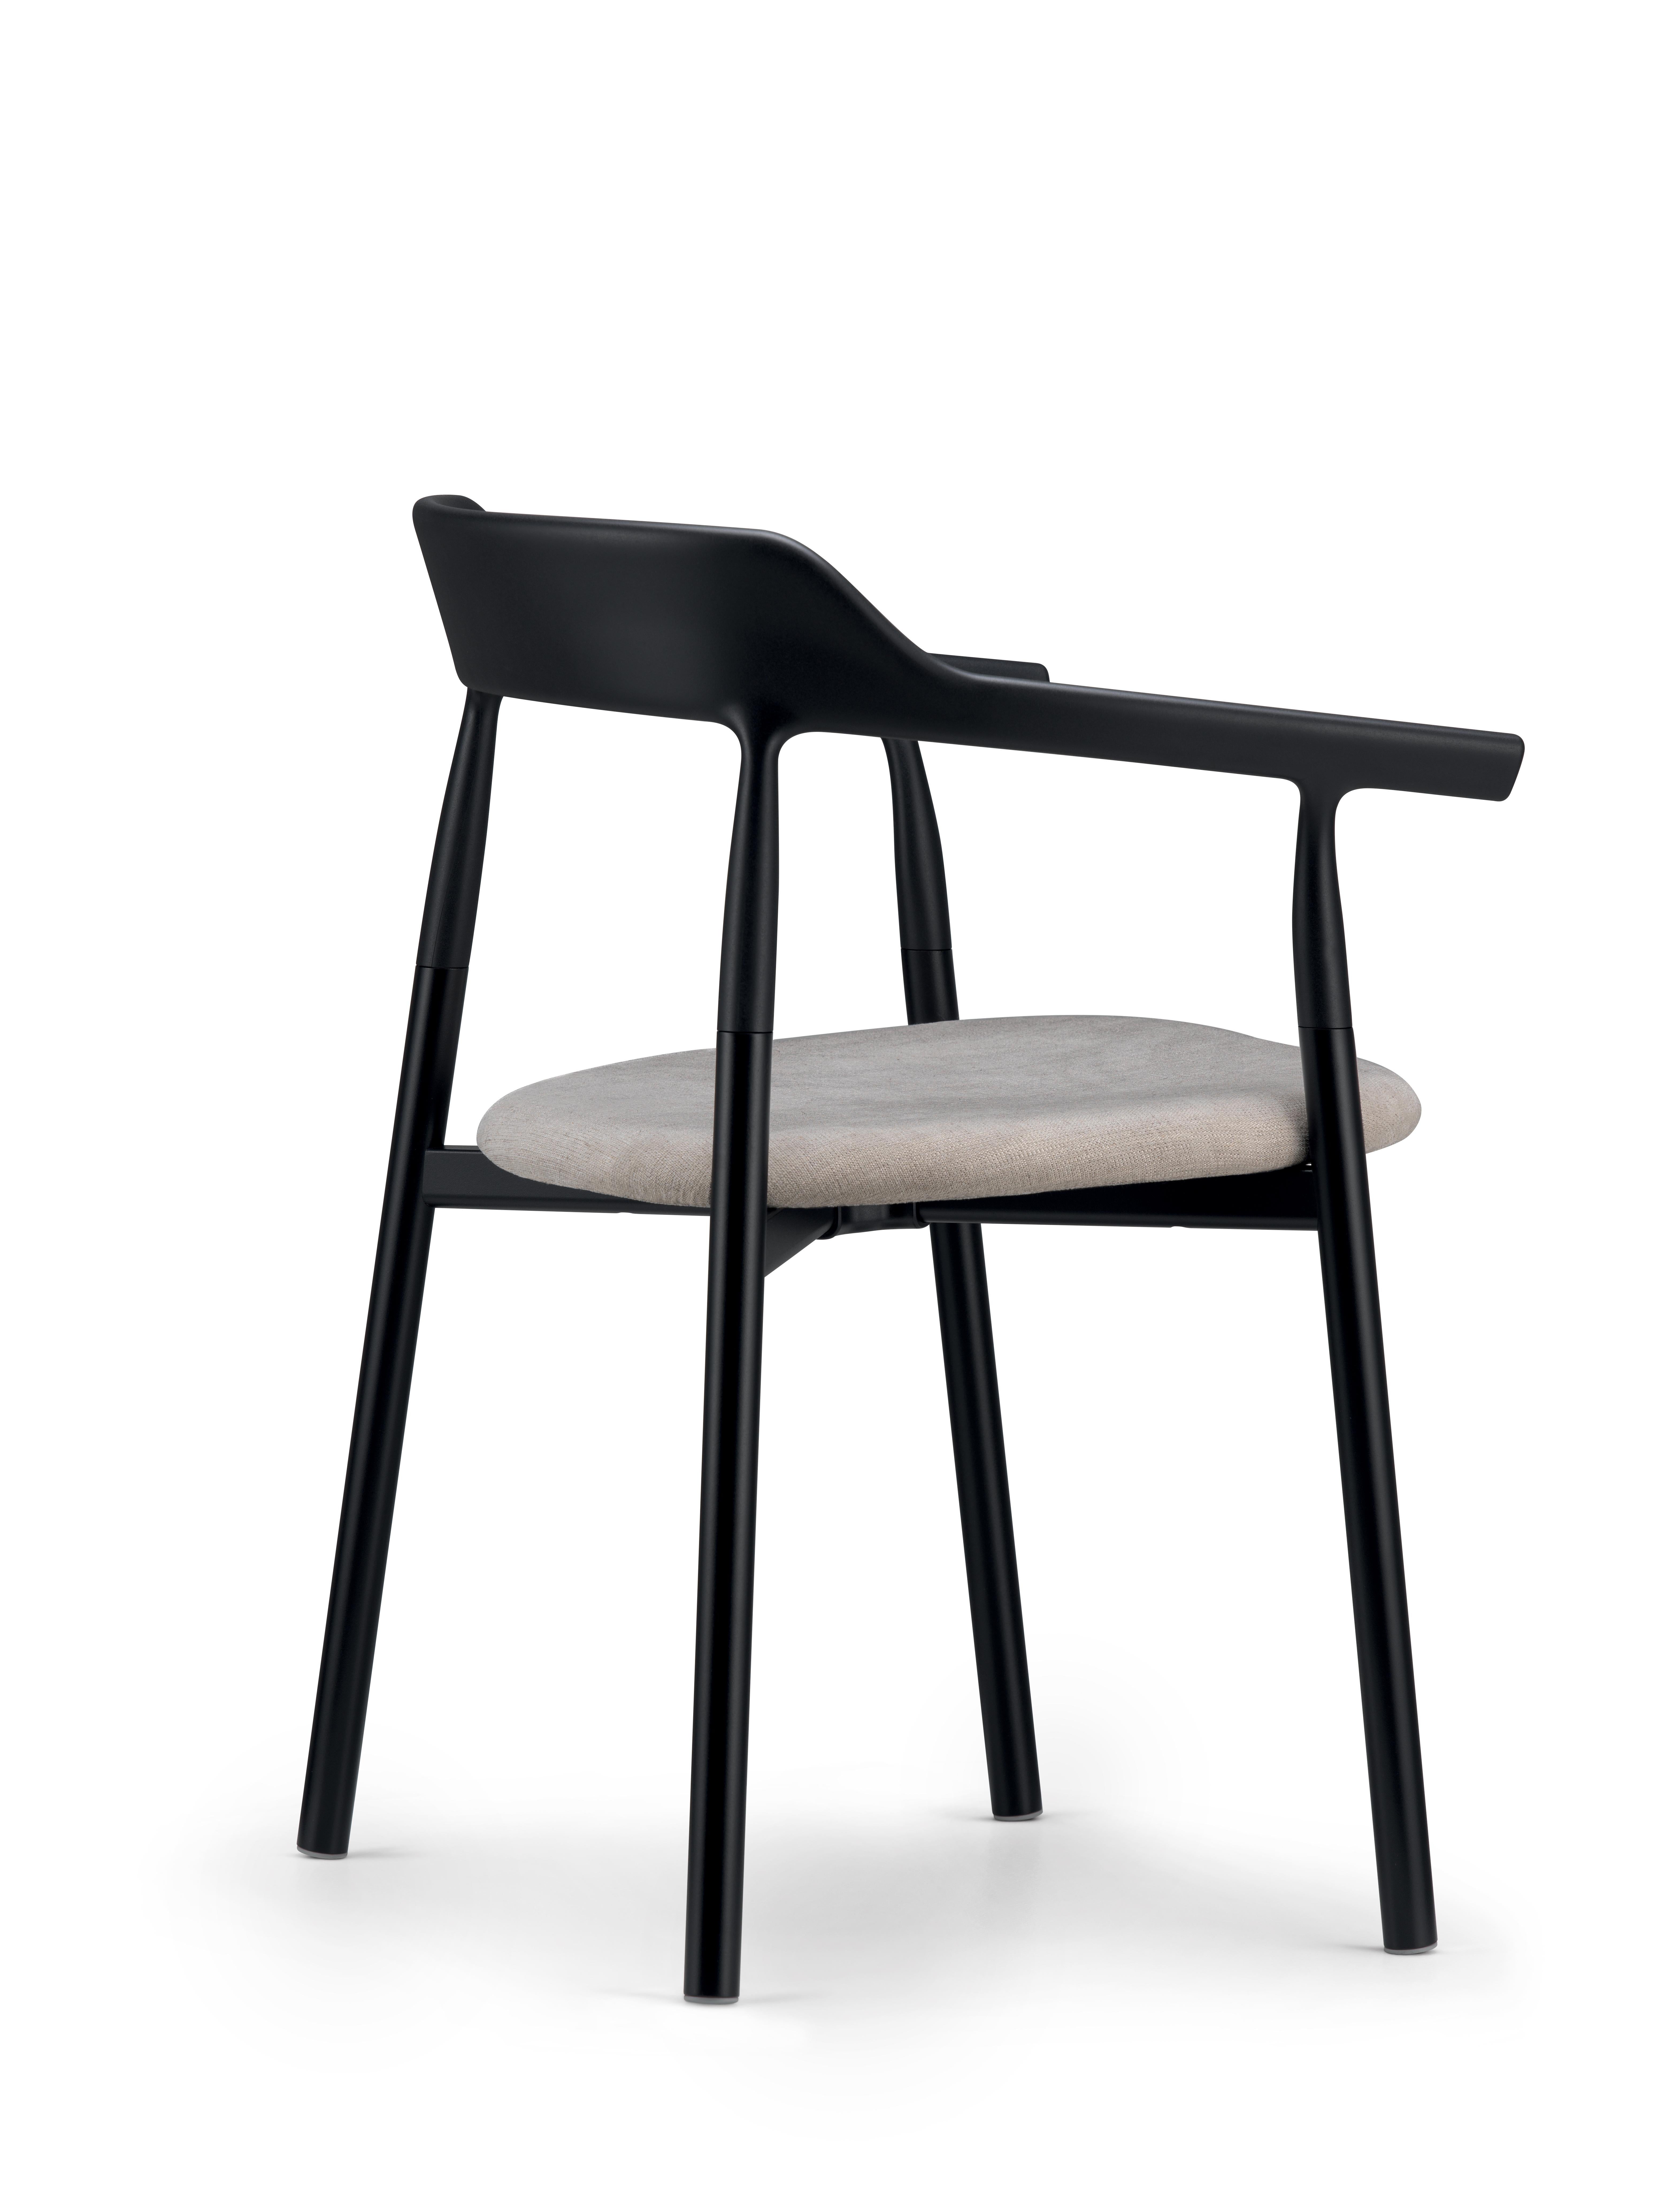 Alias 10E Twig Comfort Chair mit weißer Polsterung und schwarz lackiertem Stahlgestell by Nendo

Stuhl mit Gestell aus lackiertem Stahl; Rückenlehne aus massivem, lackiertem Kunststoff; Sitz aus massivem, lackiertem oder mit Stoff oder Leder